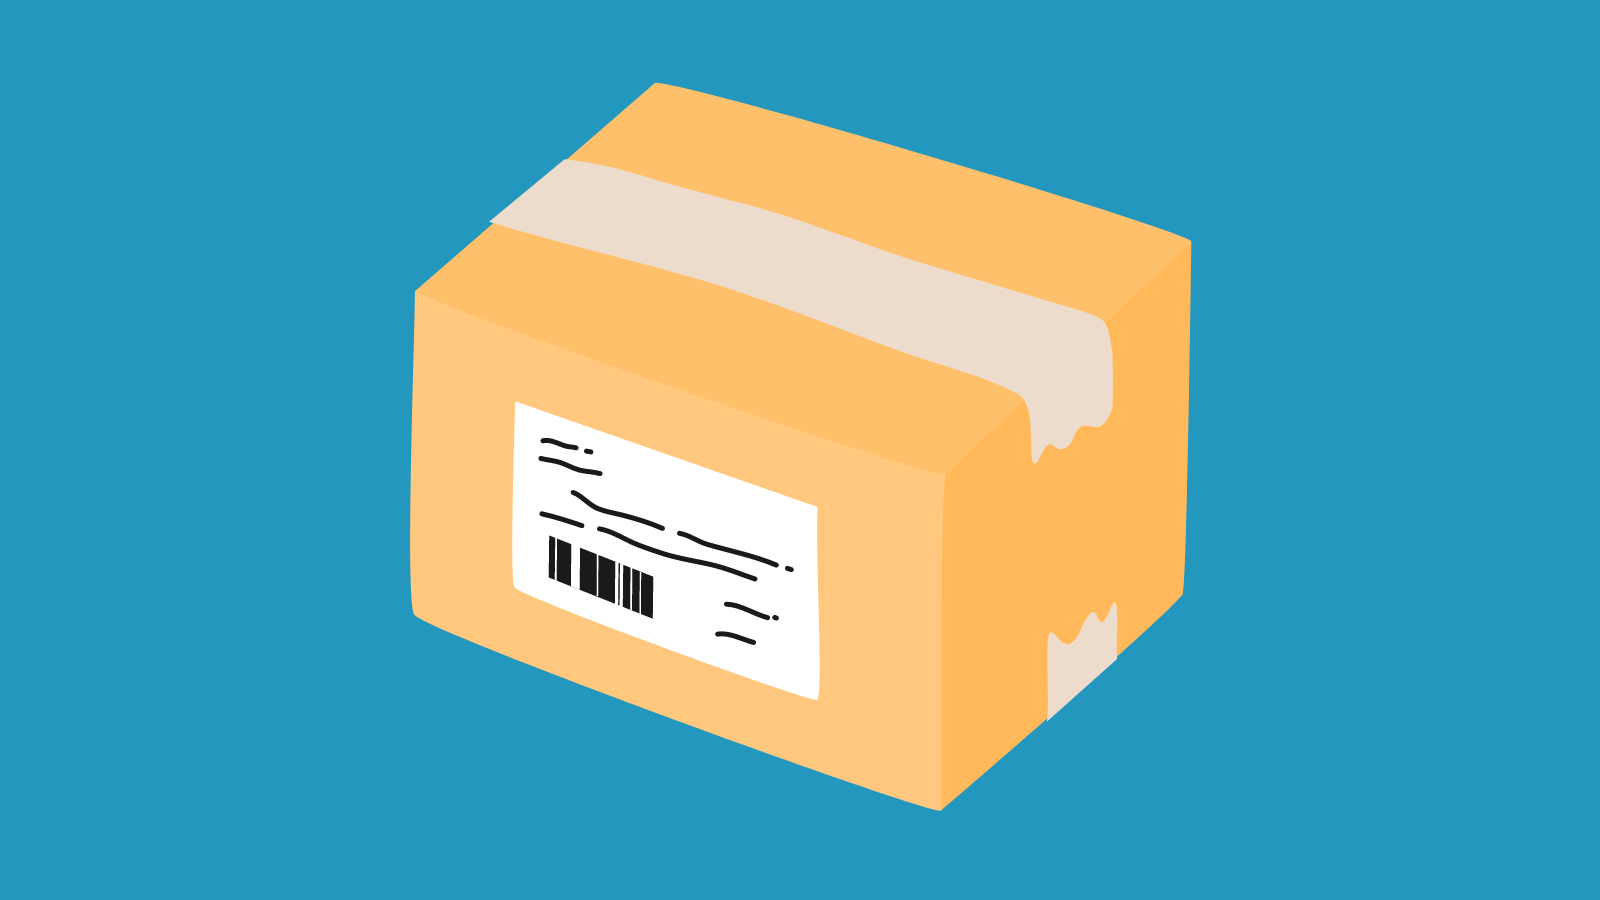 A cardboard shipping box